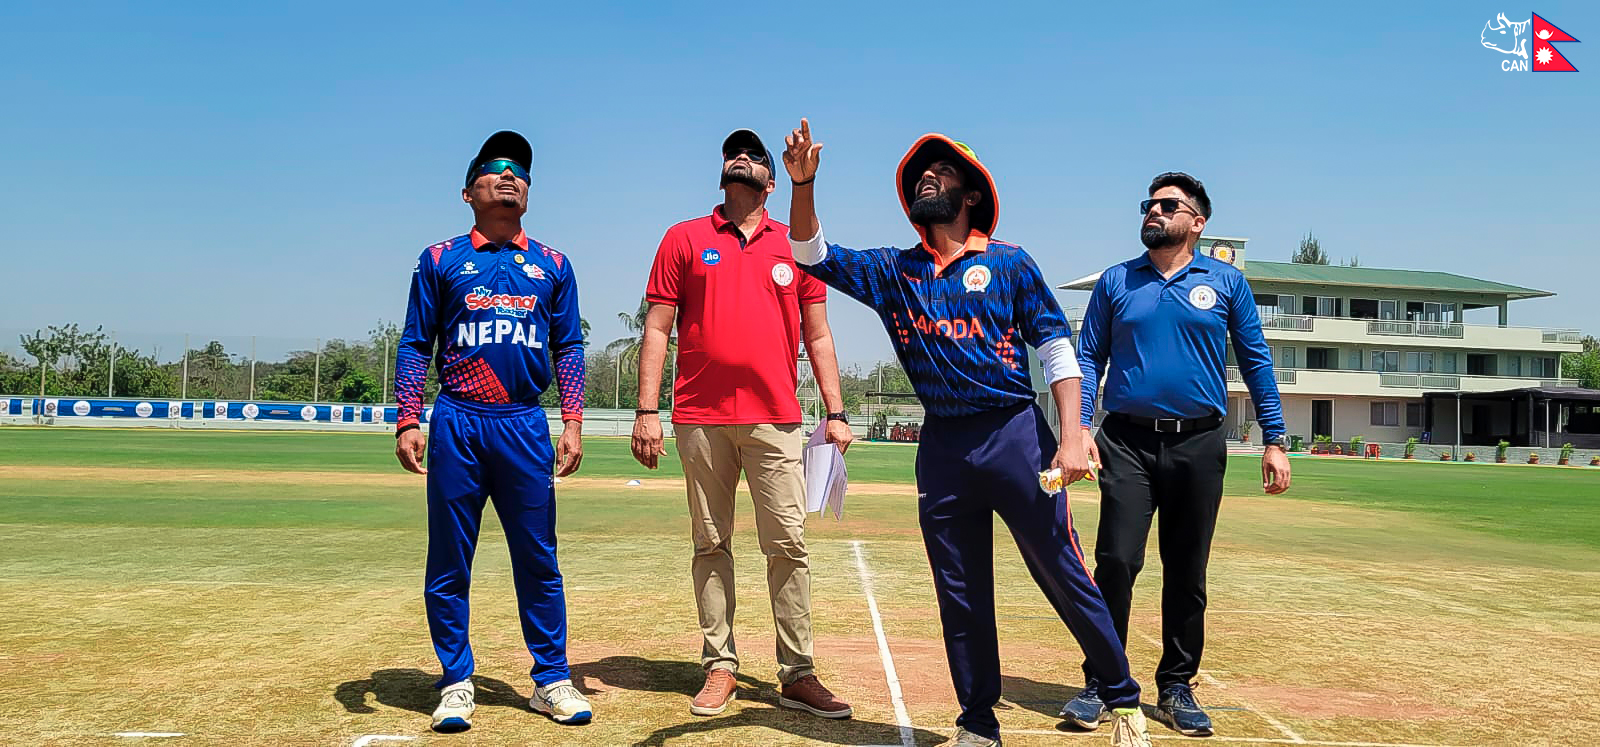 Nepal sets Baroda a target of 157 runs